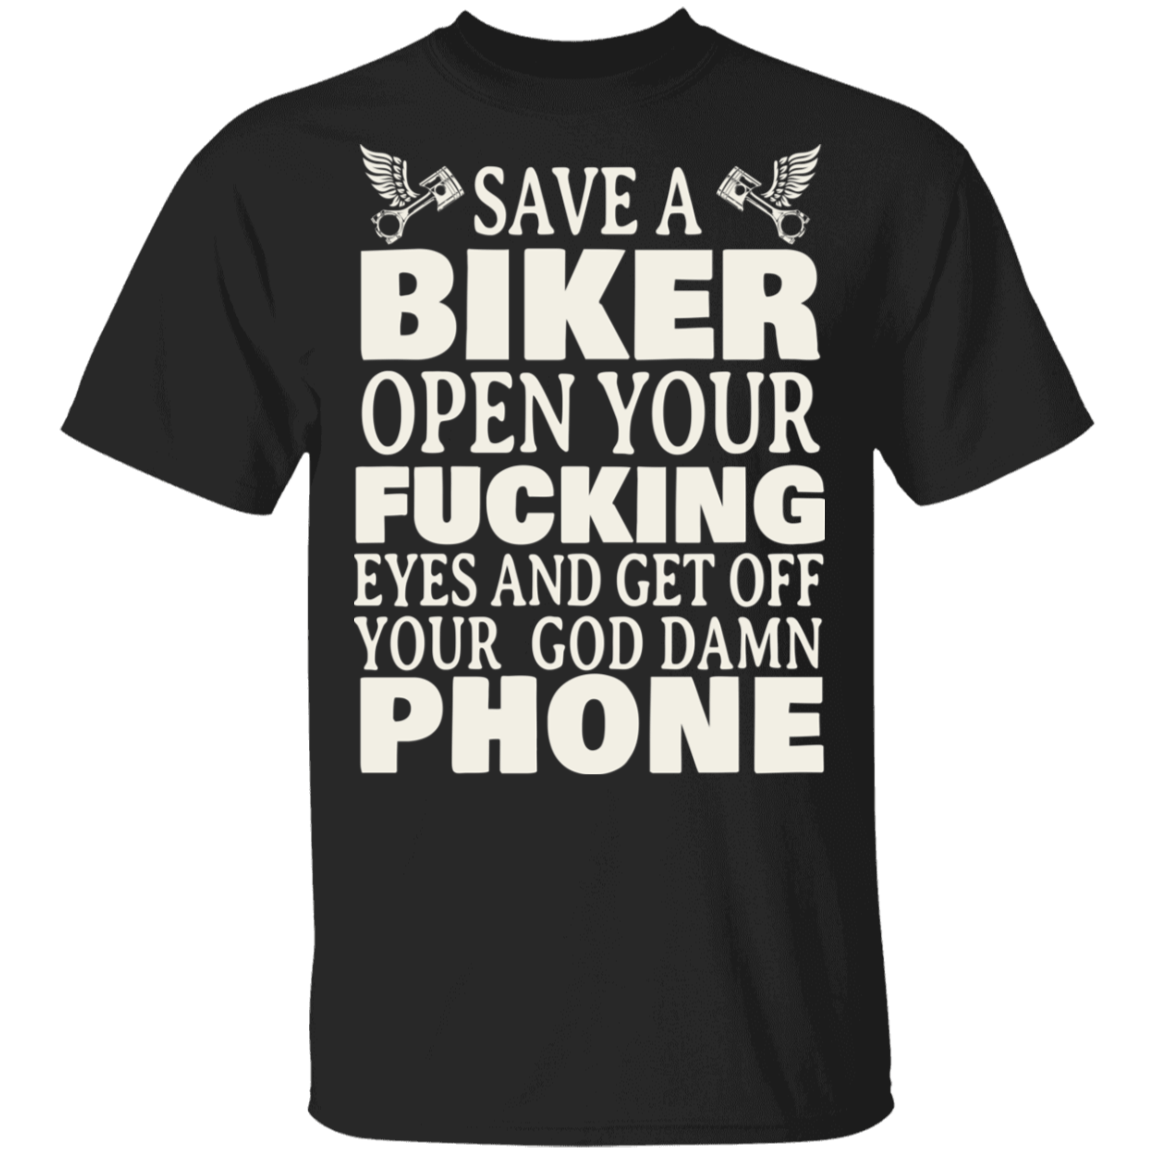 Apparel - Save A Biker Shirt